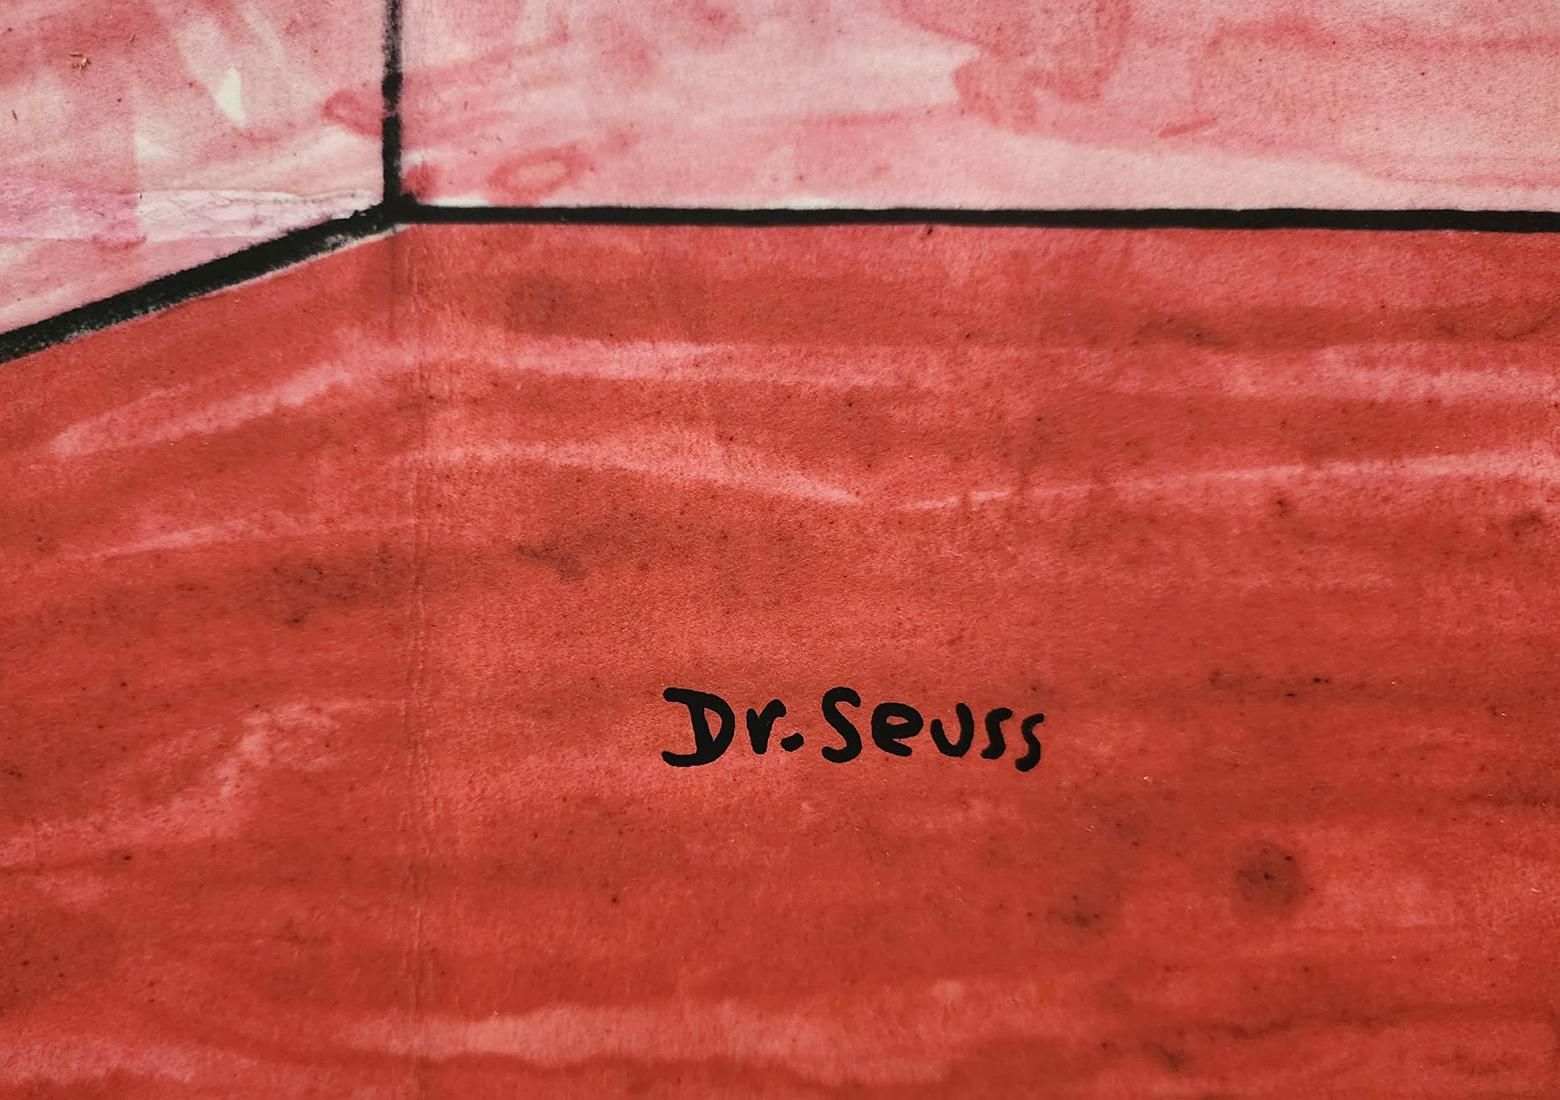 DR. SEUSS „THE CAT 60TH ANNIVERSARY“ 2017, signiert und nummeriert, selten verkauft OUT PC. – Print von (after) Dr. Seuss (Theodore Geisel)